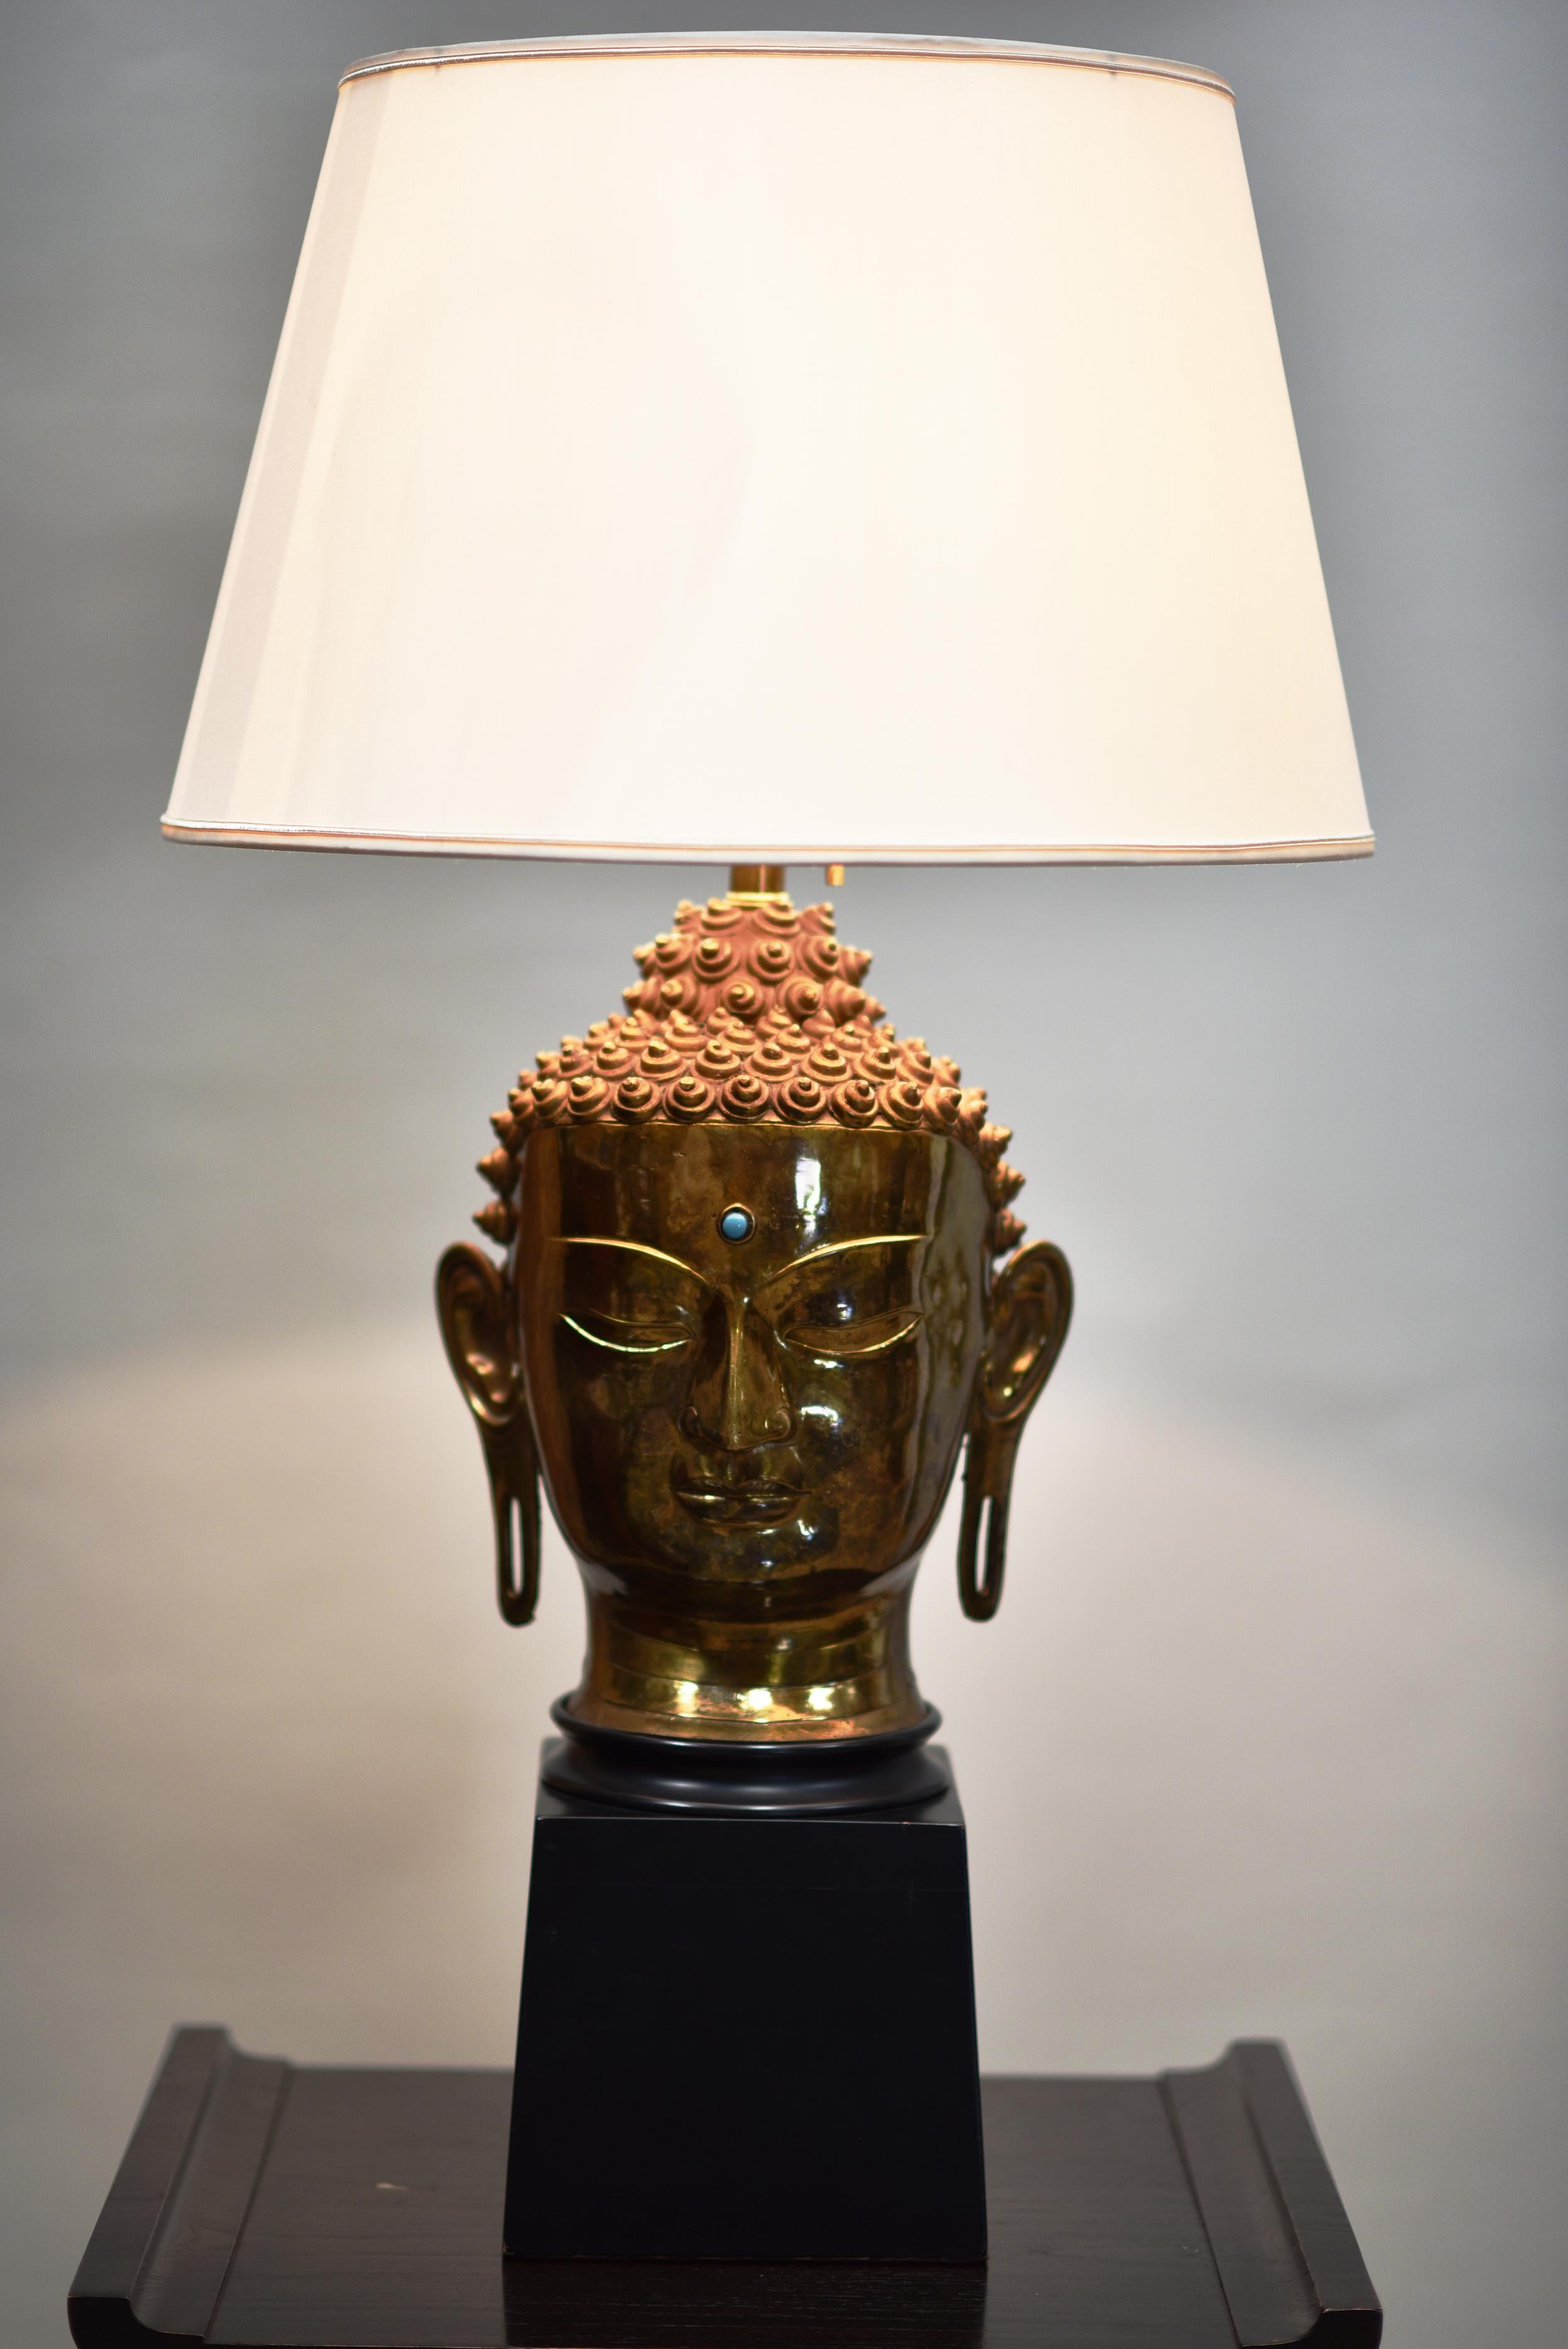 Künstler und Hersteller sind unbekannt. Dies ist eine schöne einzelne Hindu-Kopflampe in Messing und Holz mit markanten Zeichen in Kopfschmuck und Verzierungen mit einem Jewell in der Mitte des Kopfes des Buddha.